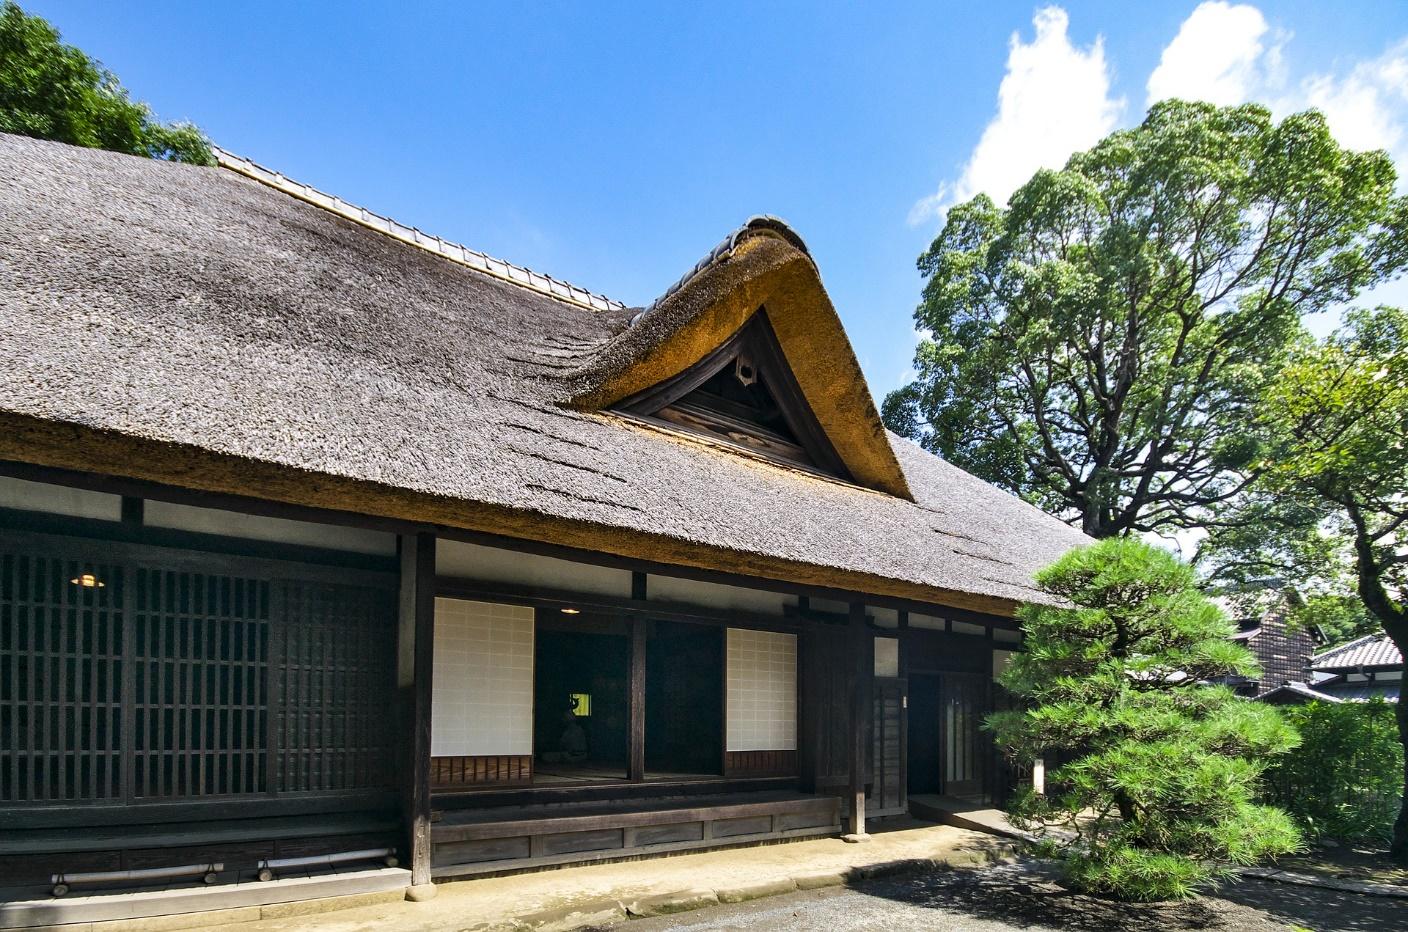 Indahnya Arsitektur Rumah Jepang Yang Asri Dan Sederhana